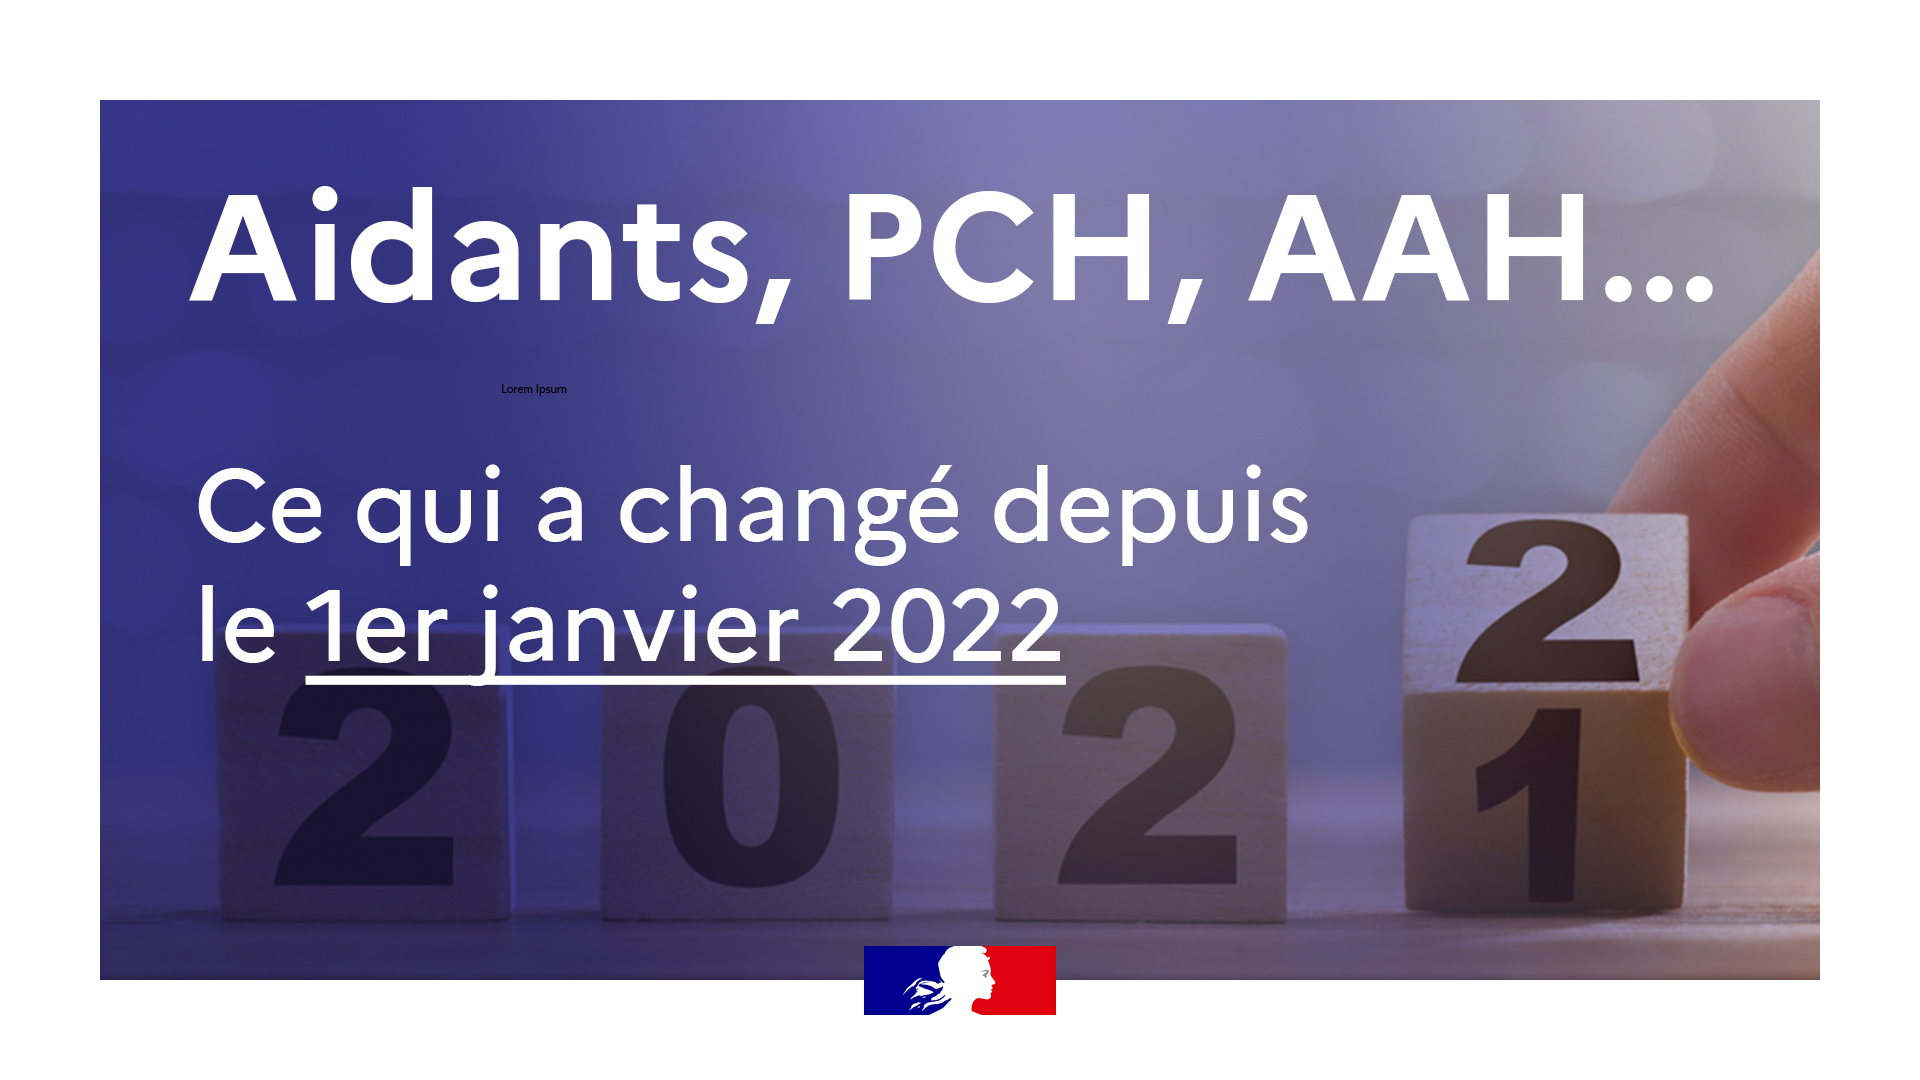 Aidants, PCH, AAH, ce qui a changé depuis le 1er janvier 2022